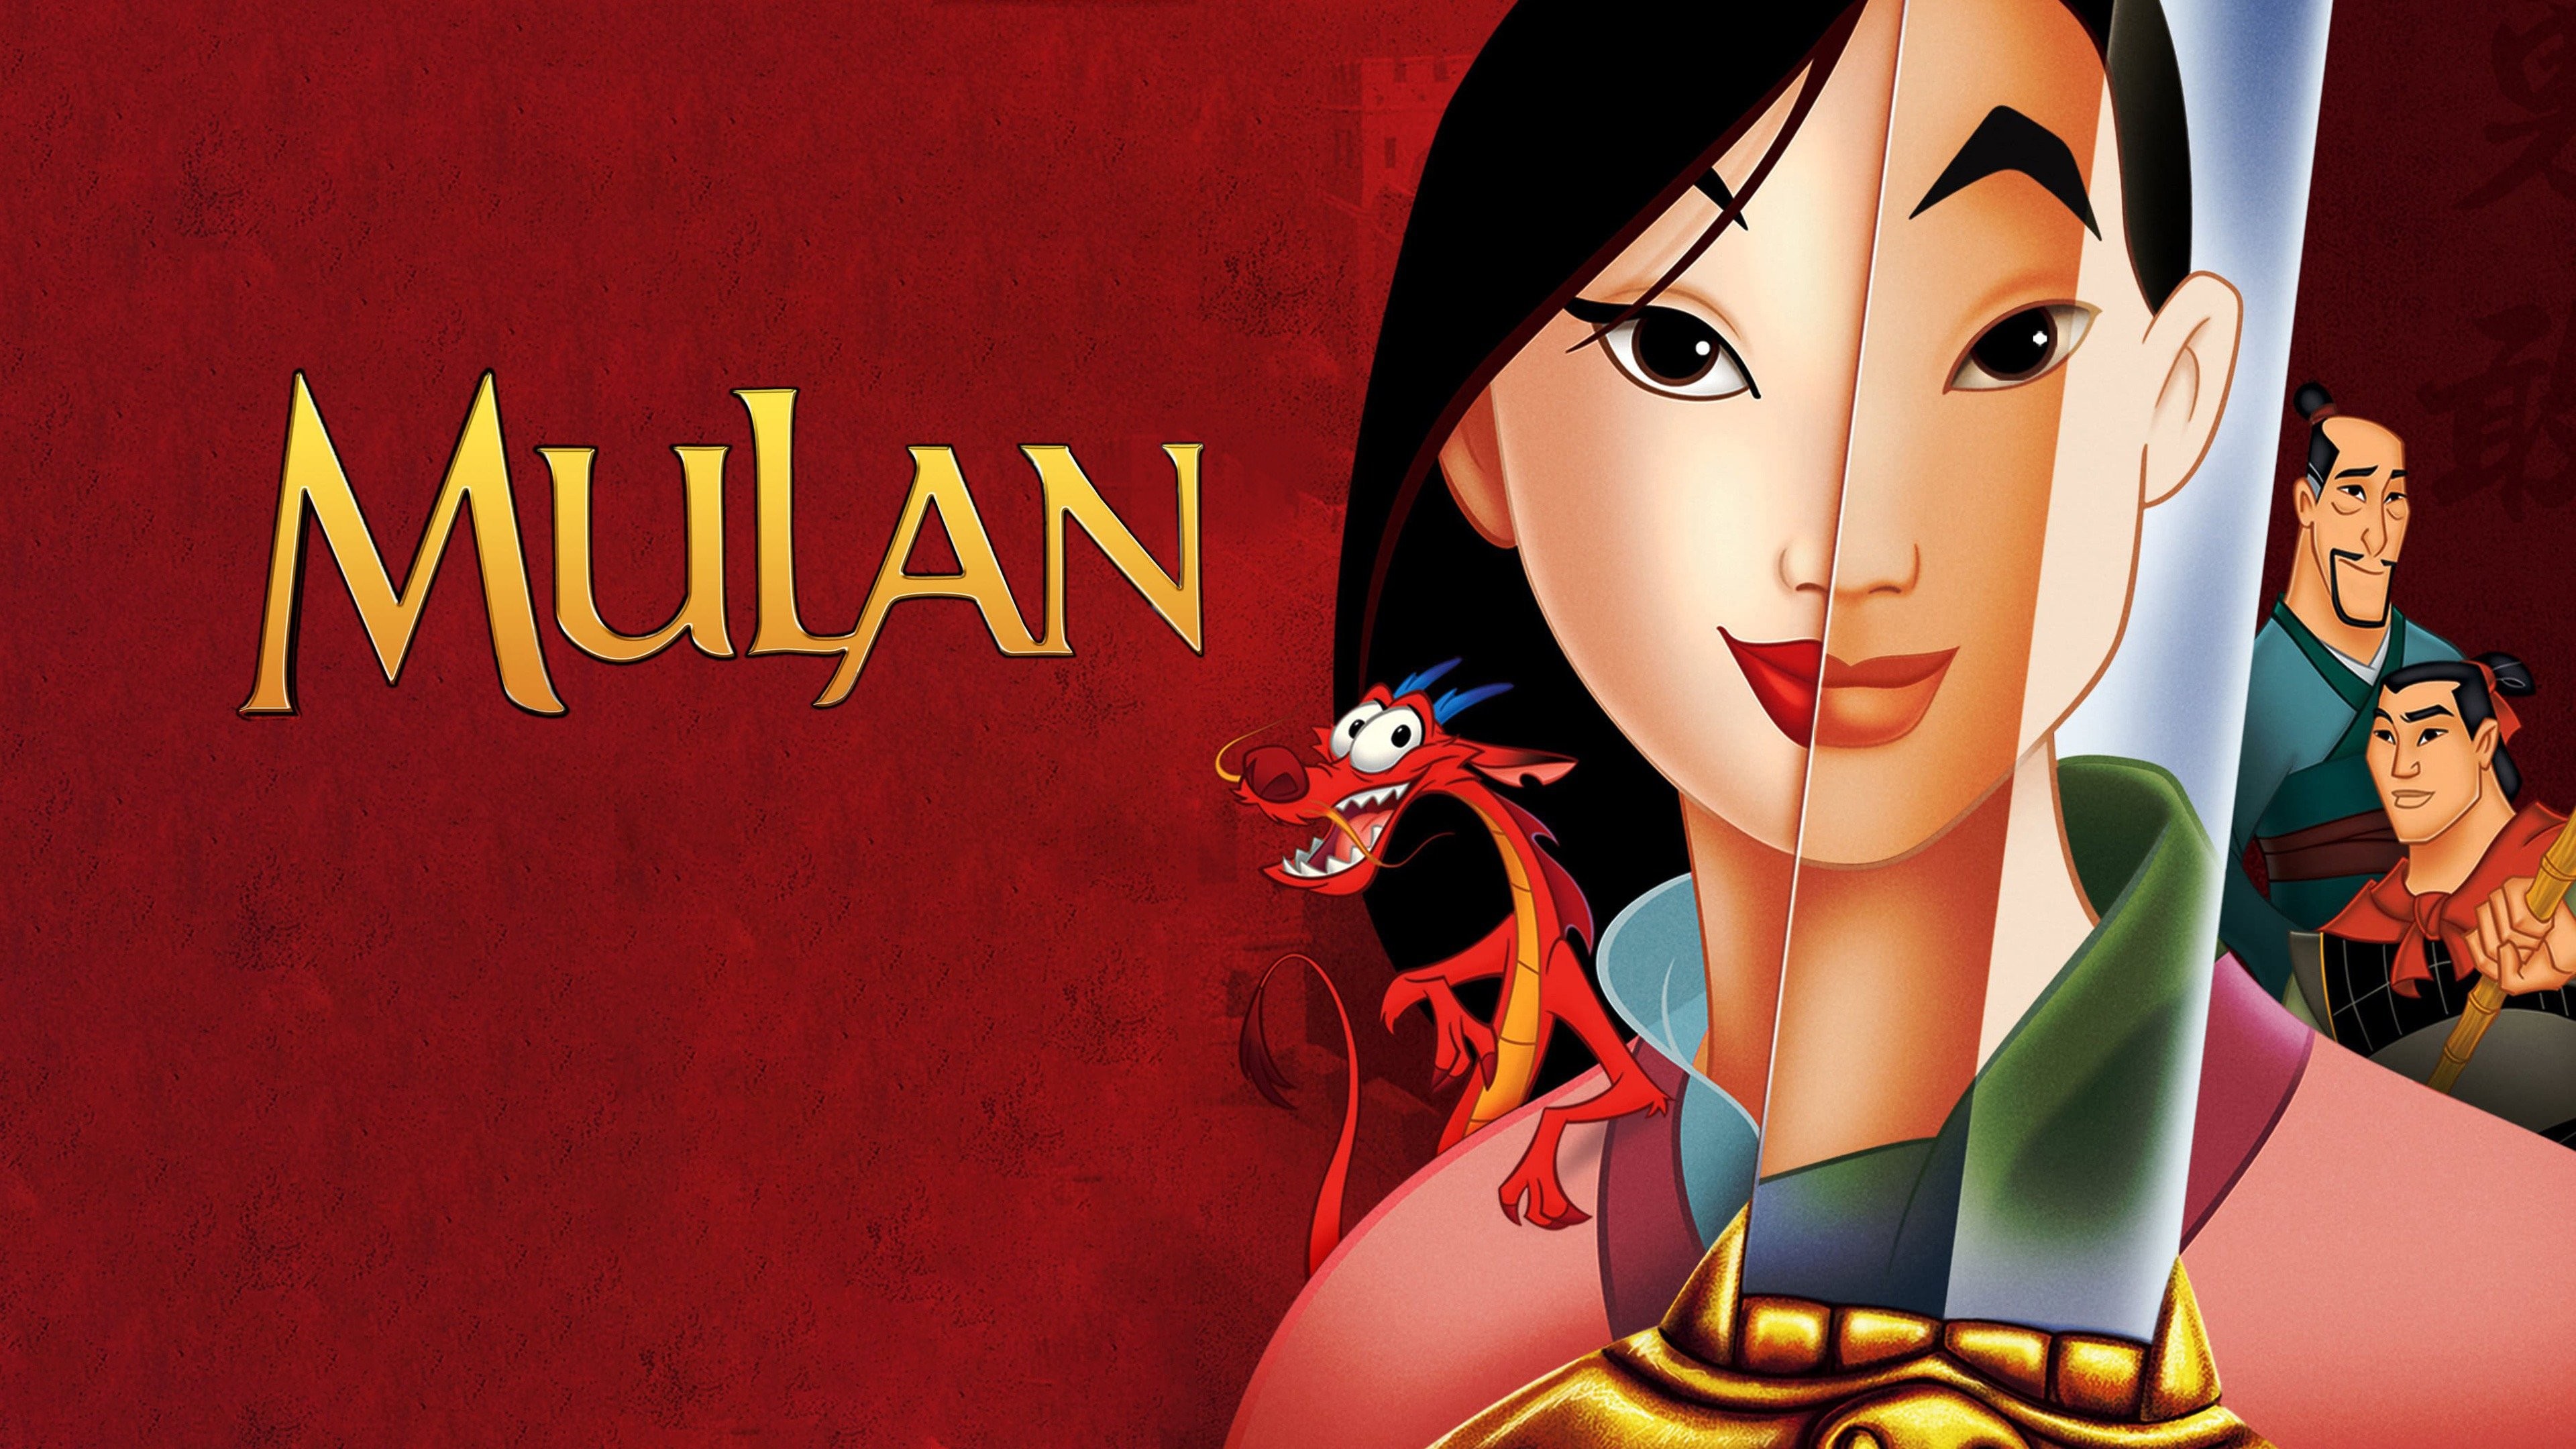 Movie Reviews and GIVEAWAY: Mulan (1998) vs. Mulan (2020) - ends 11/22